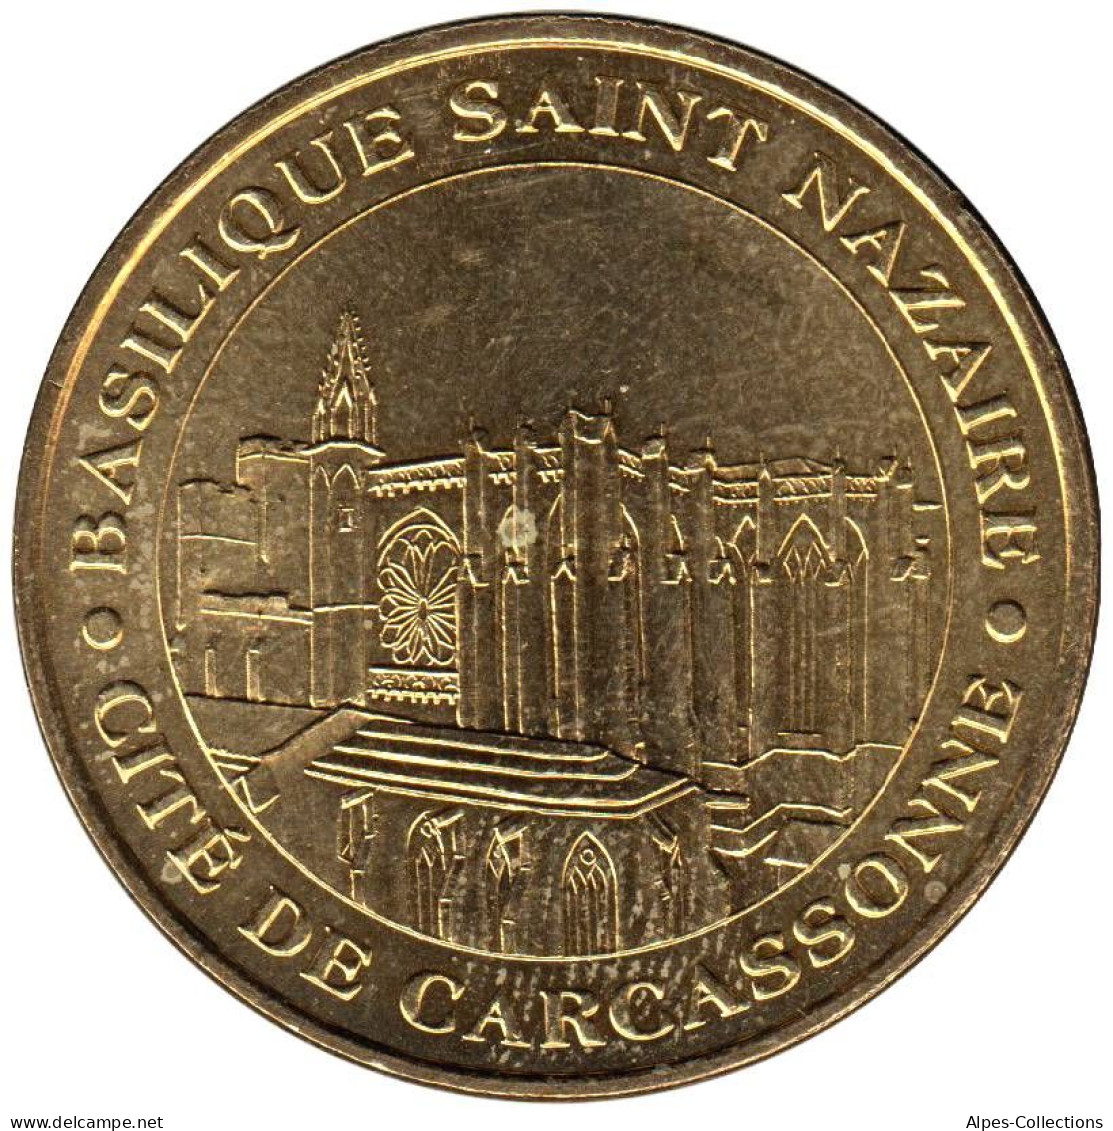 11-0016 - JETON TOURISTIQUE MDP - Basilique Saint-Nazaire - Carcassonne - 2005.1 - 2005